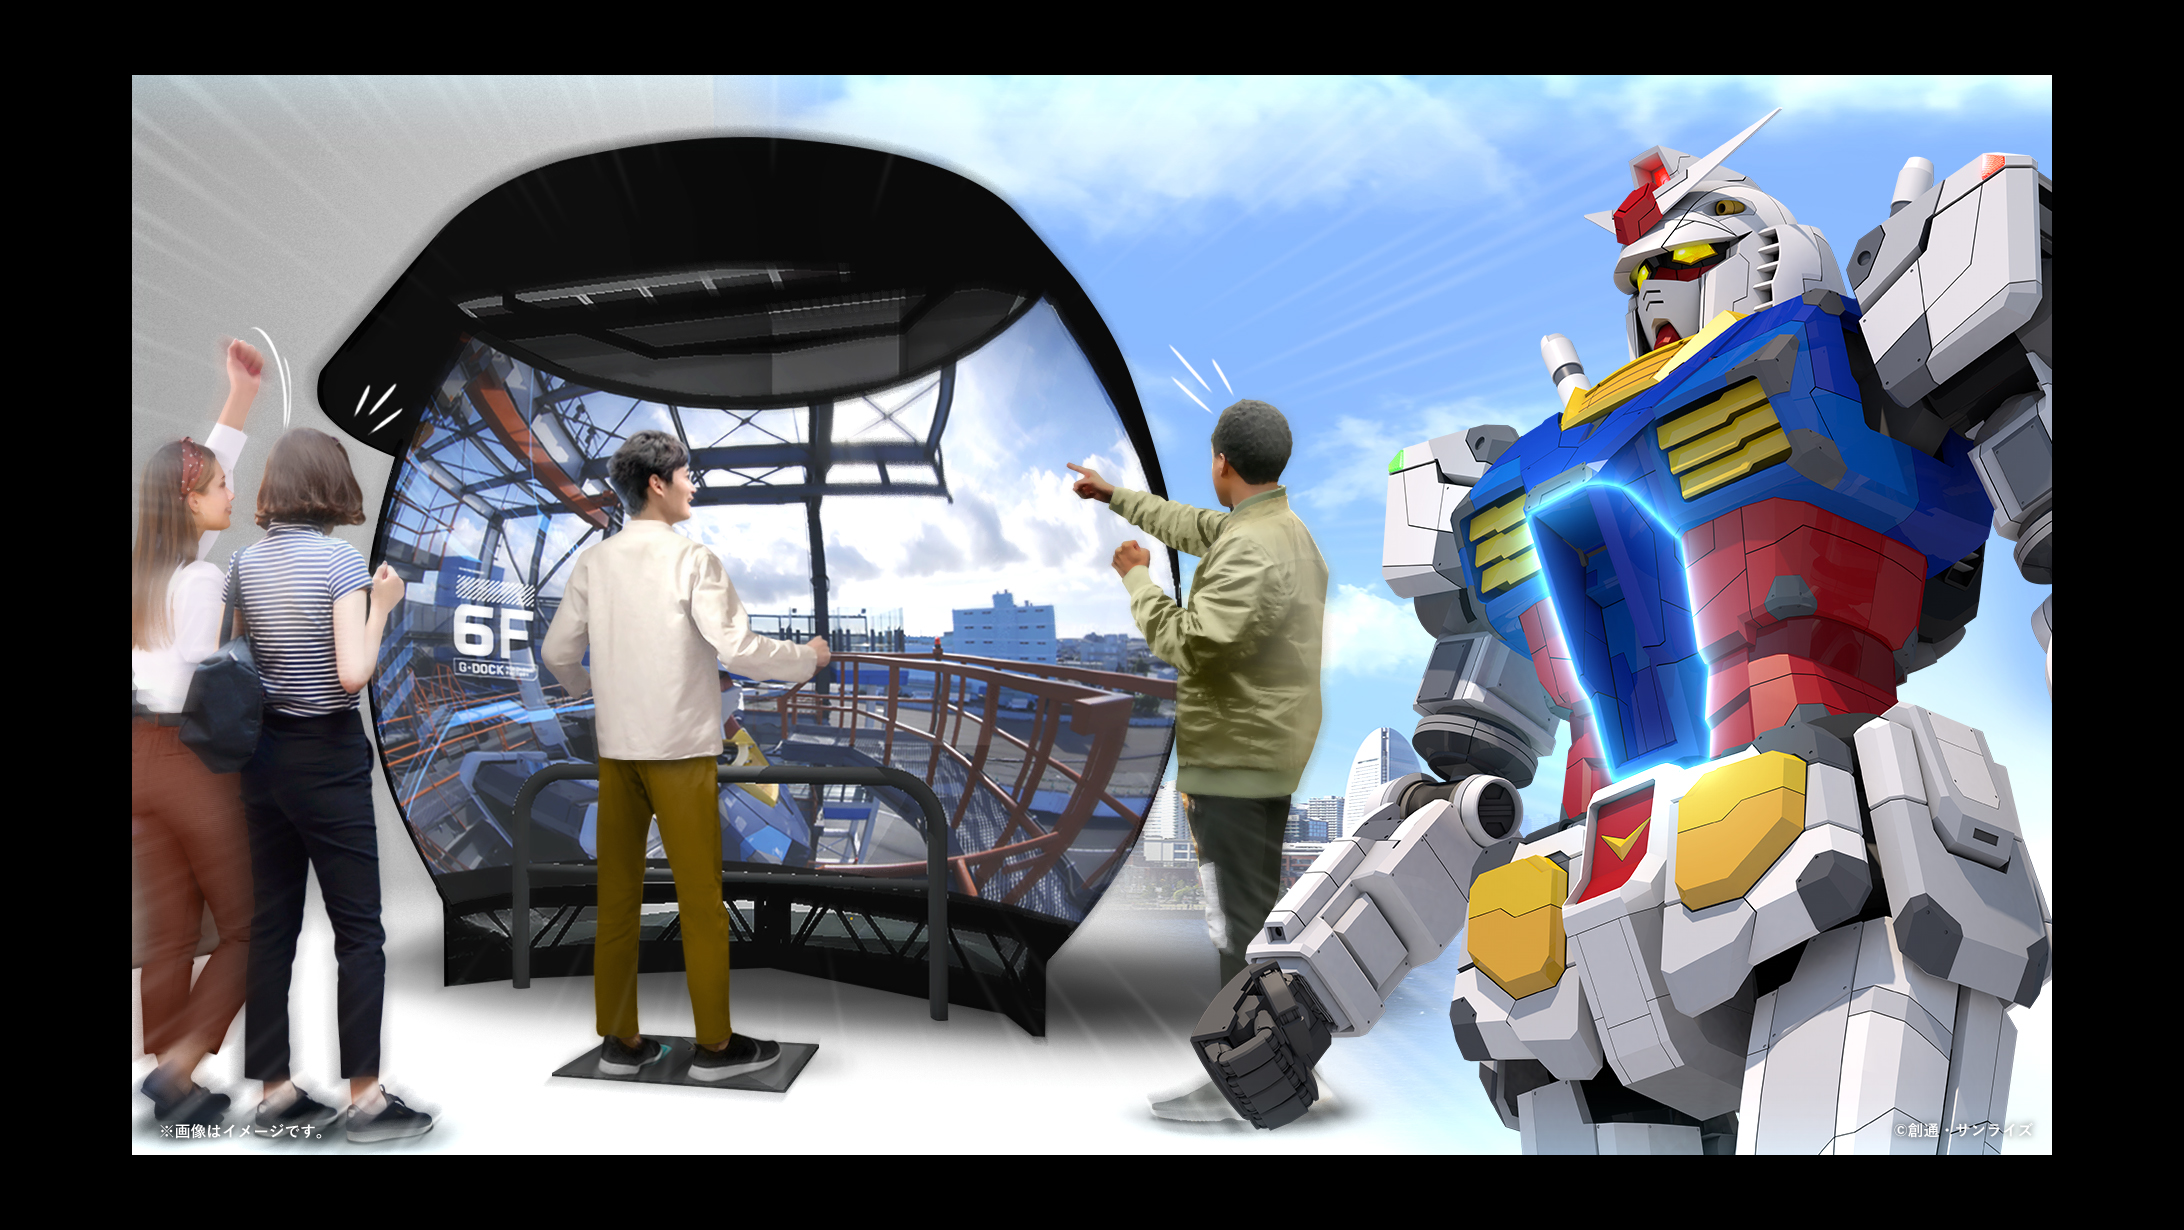 年12月開催の Gundam Factory Yokohama に5gパートナーとして協賛が決定 18mの実物大 動くガンダム でsoftbank 5gを体感せよ ソフトバンク株式会社のプレスリリース